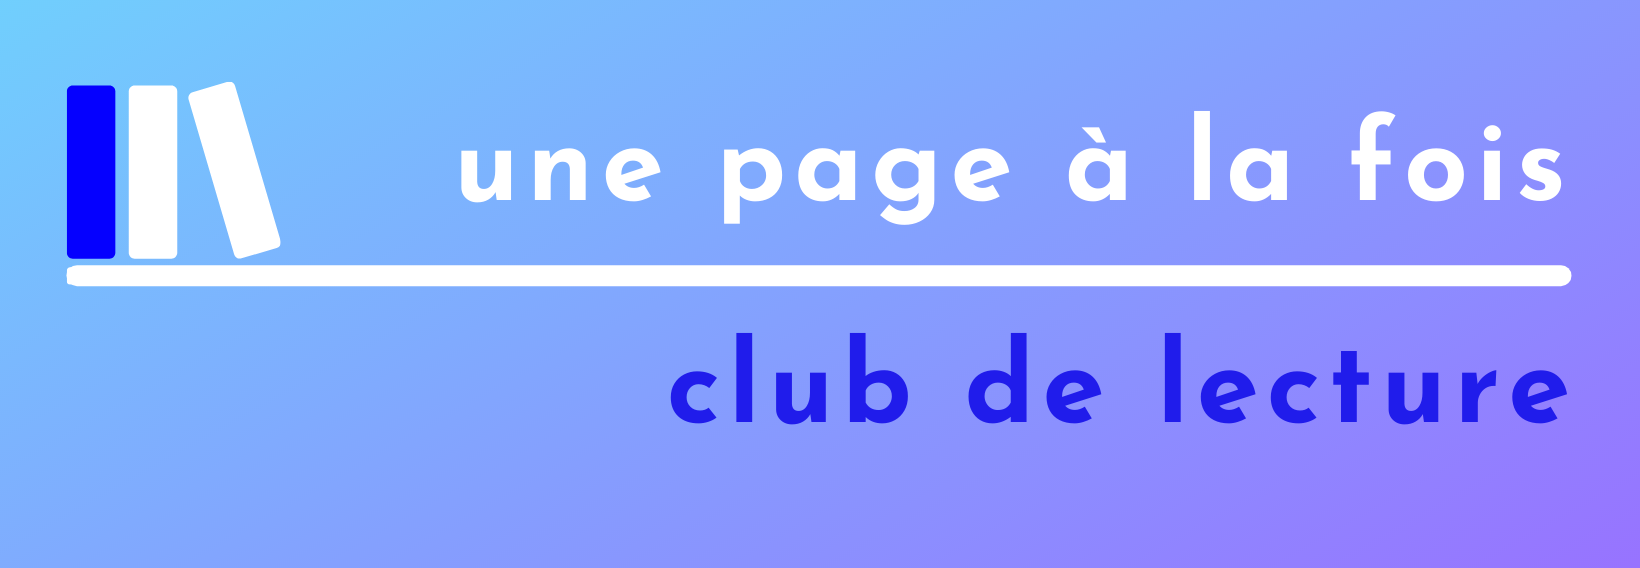 logo-une-page-a-la-fois-book-club